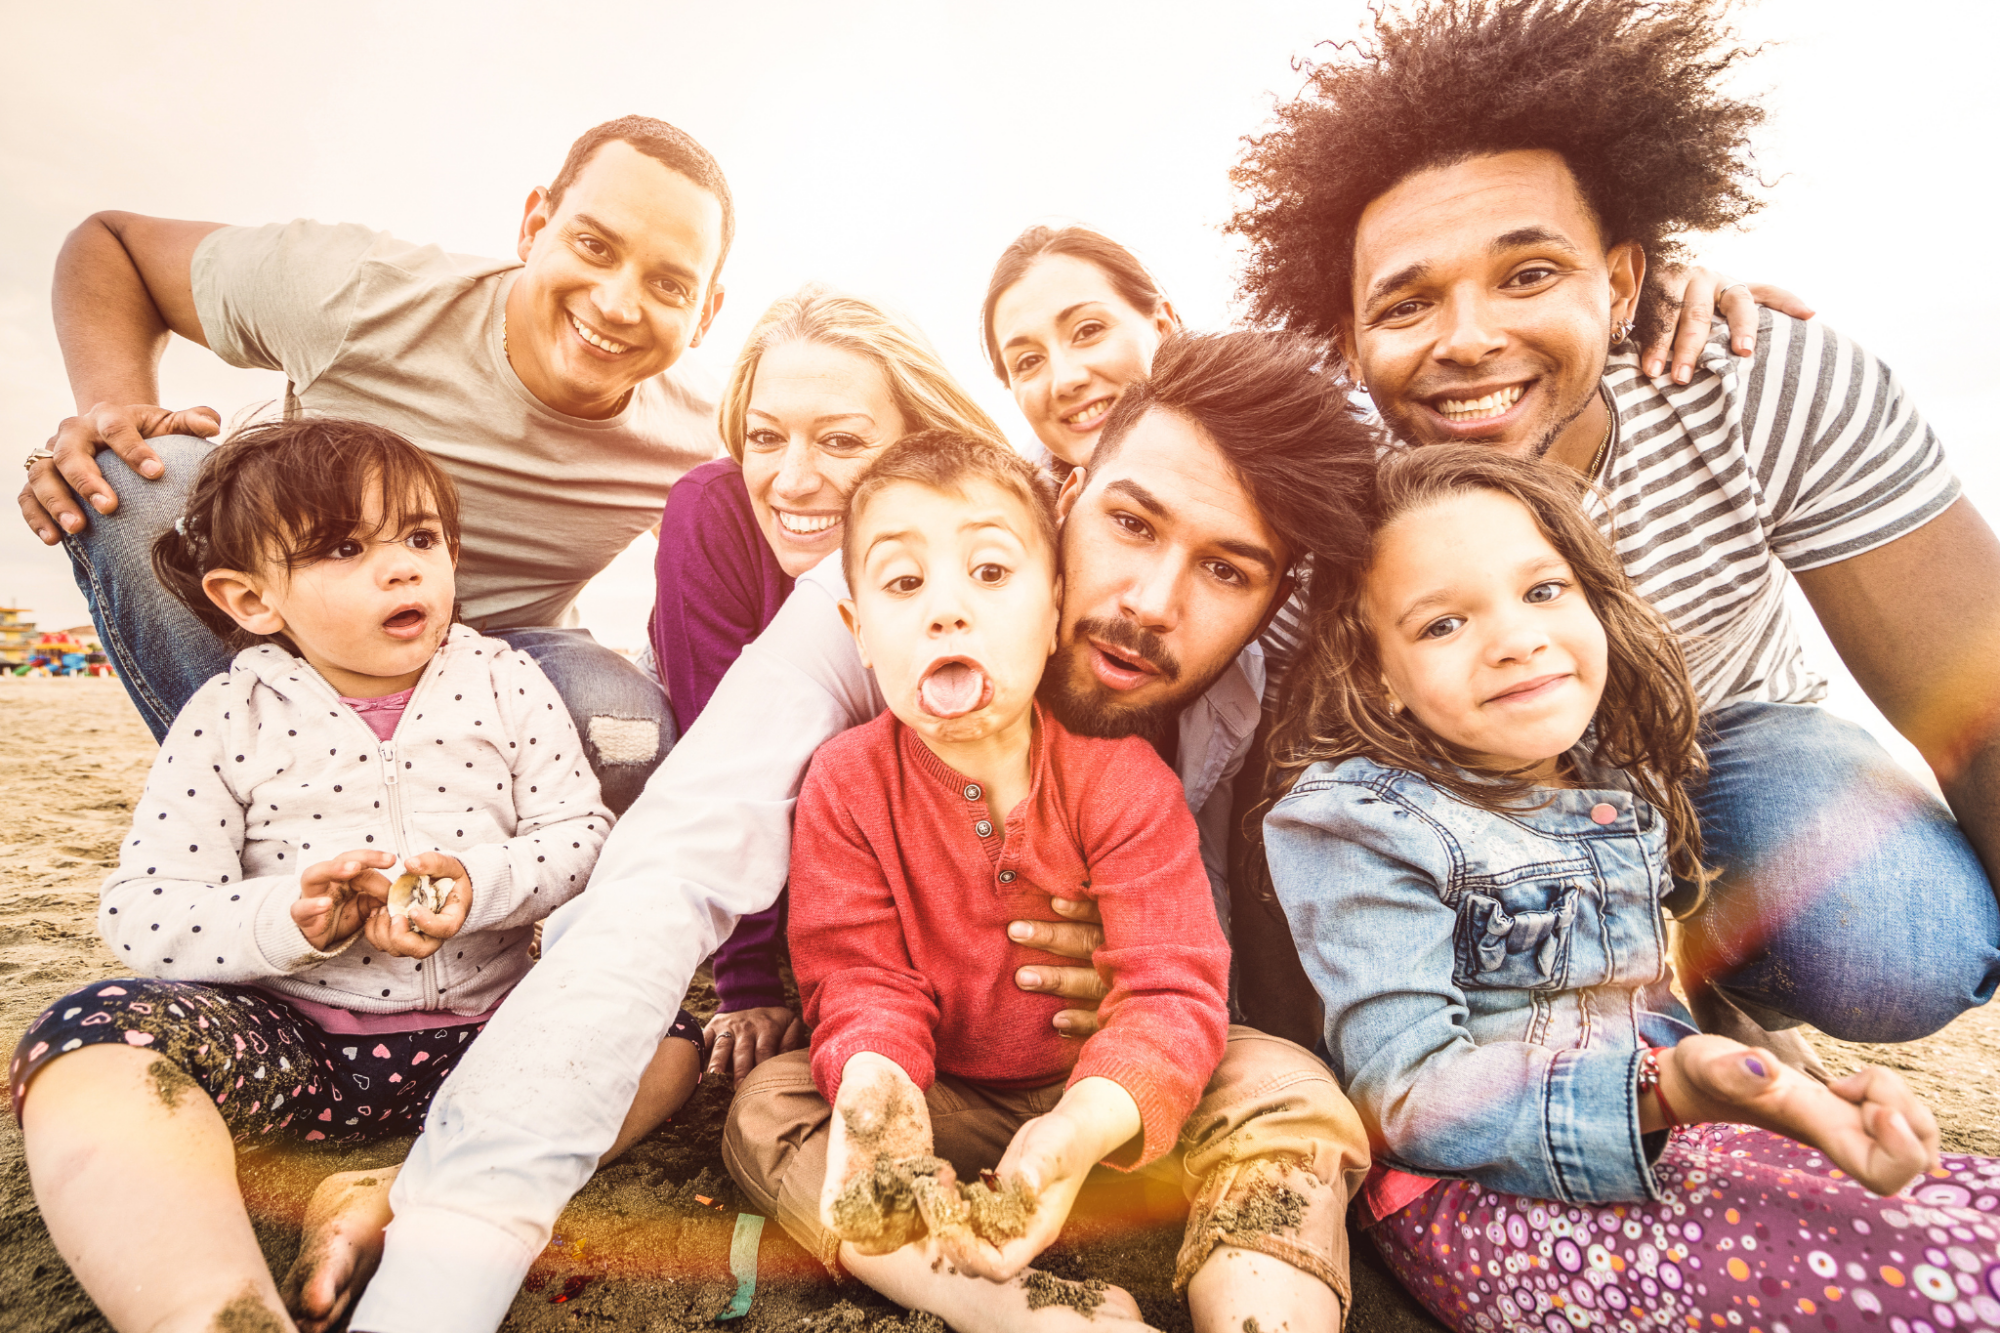 Persones adultes i infants somrient representant la diversitat familiar